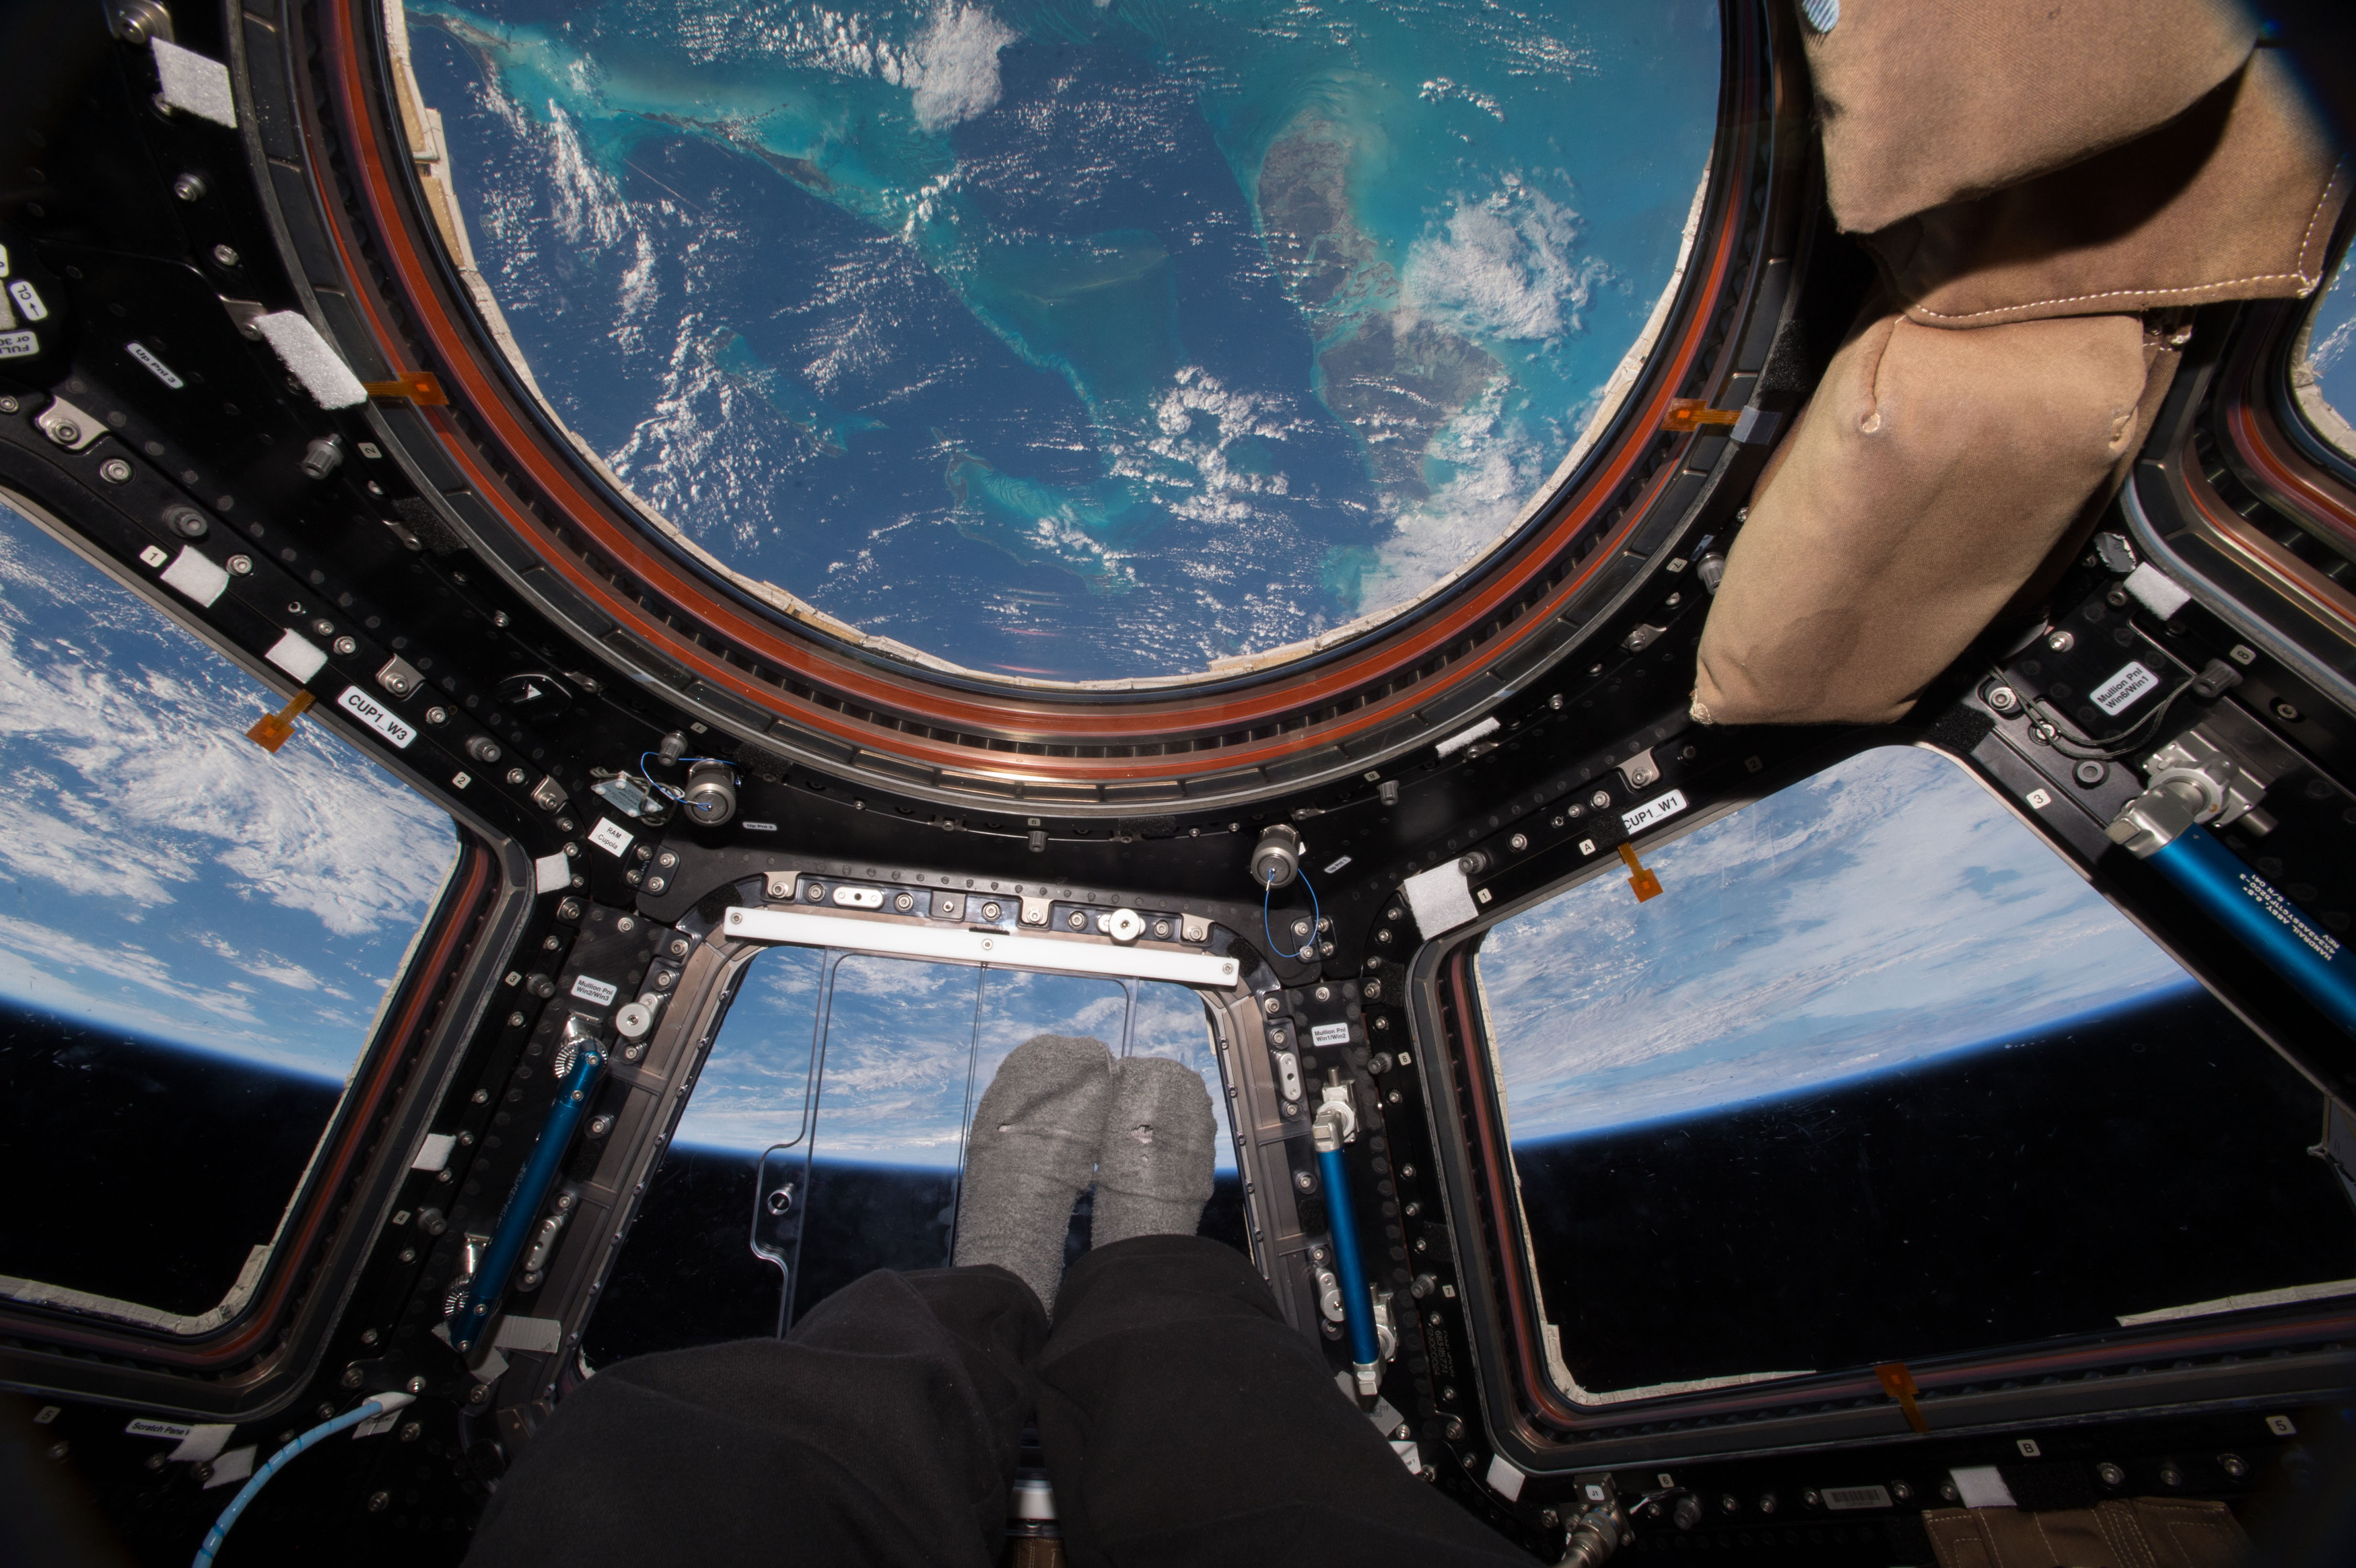 Ez durva! Berepedt a Nemzetközi Űrállomás egyik ablaka - Fotó! - Blikk